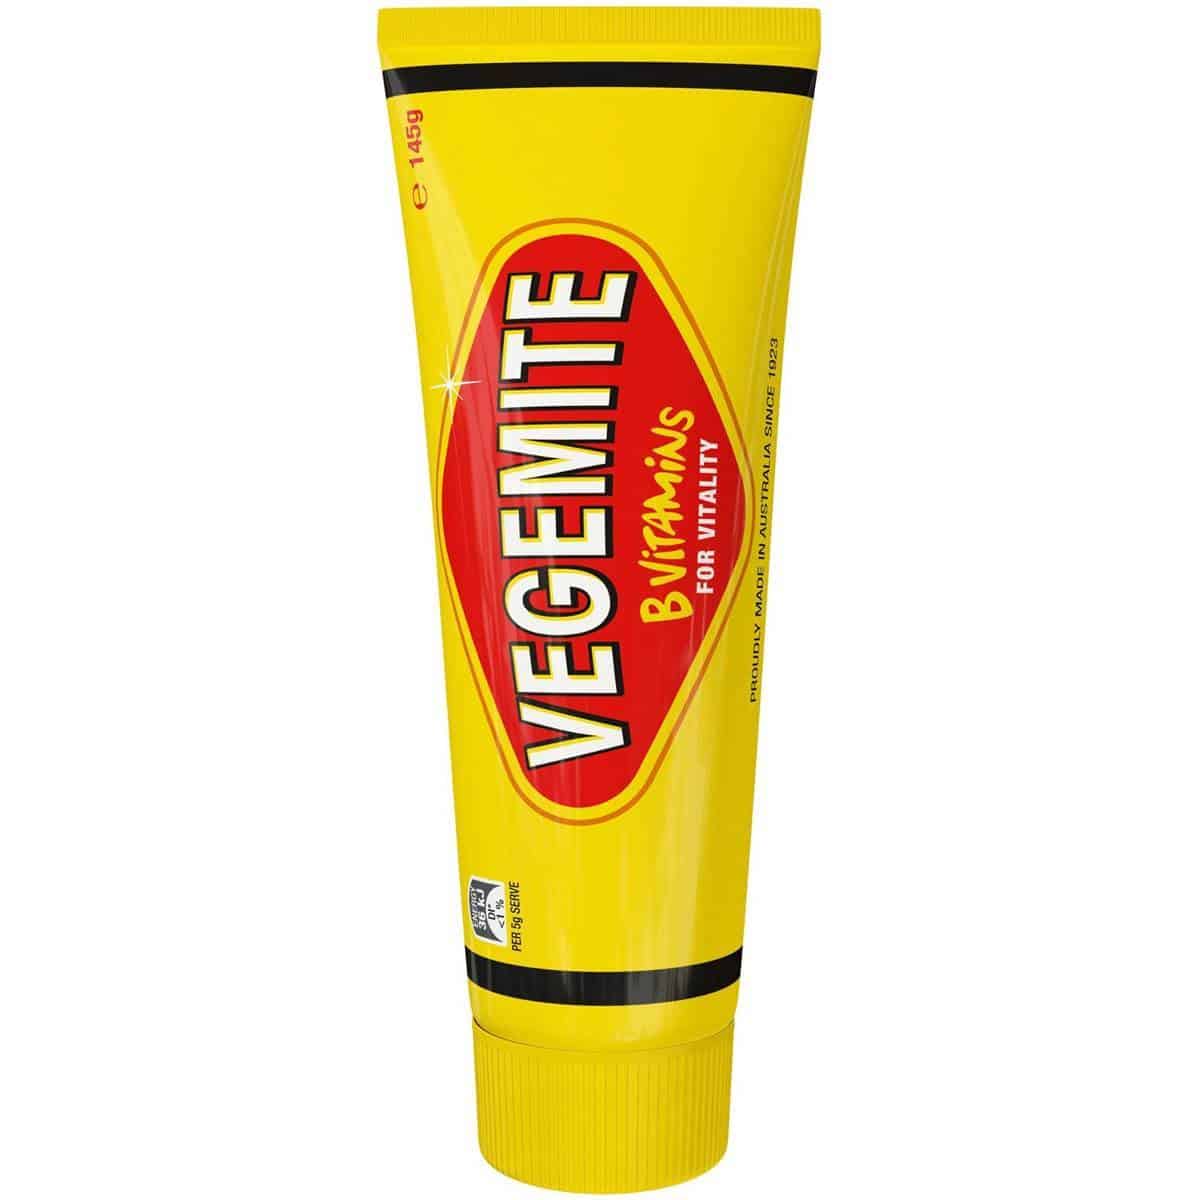 travel vegemite tube